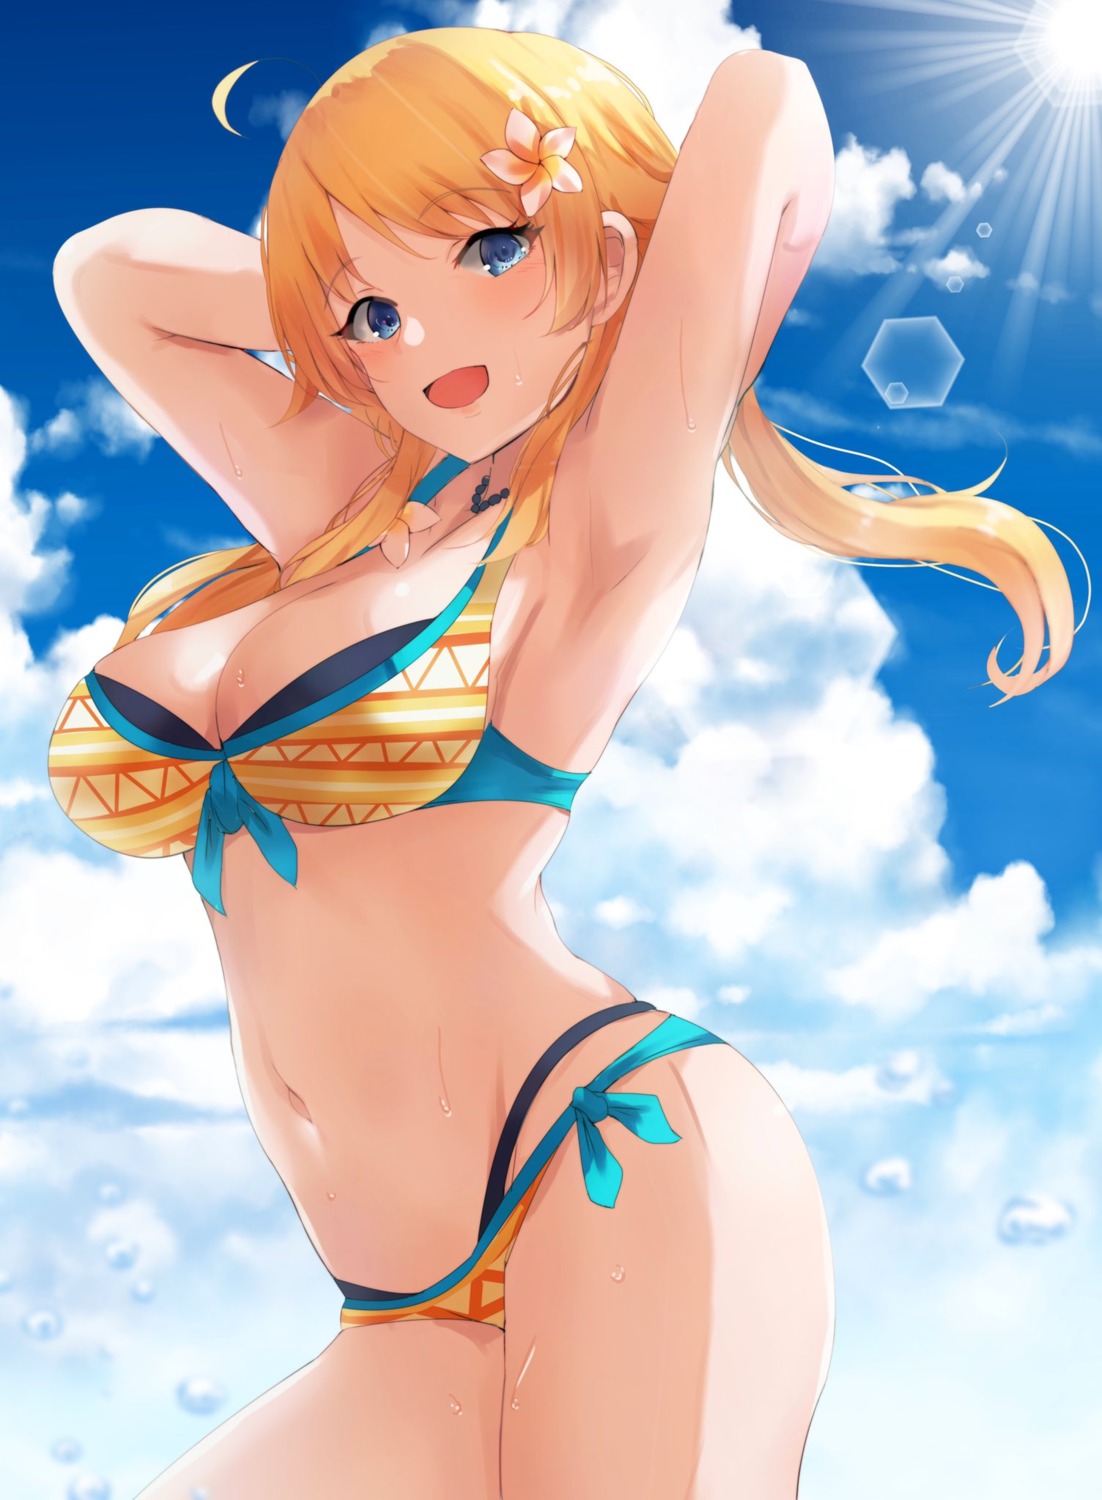 bikini cleavage hachimiya_meguru ryuu. swimsuits the_idolm@ster the_idolm@ster_shiny_colors wet